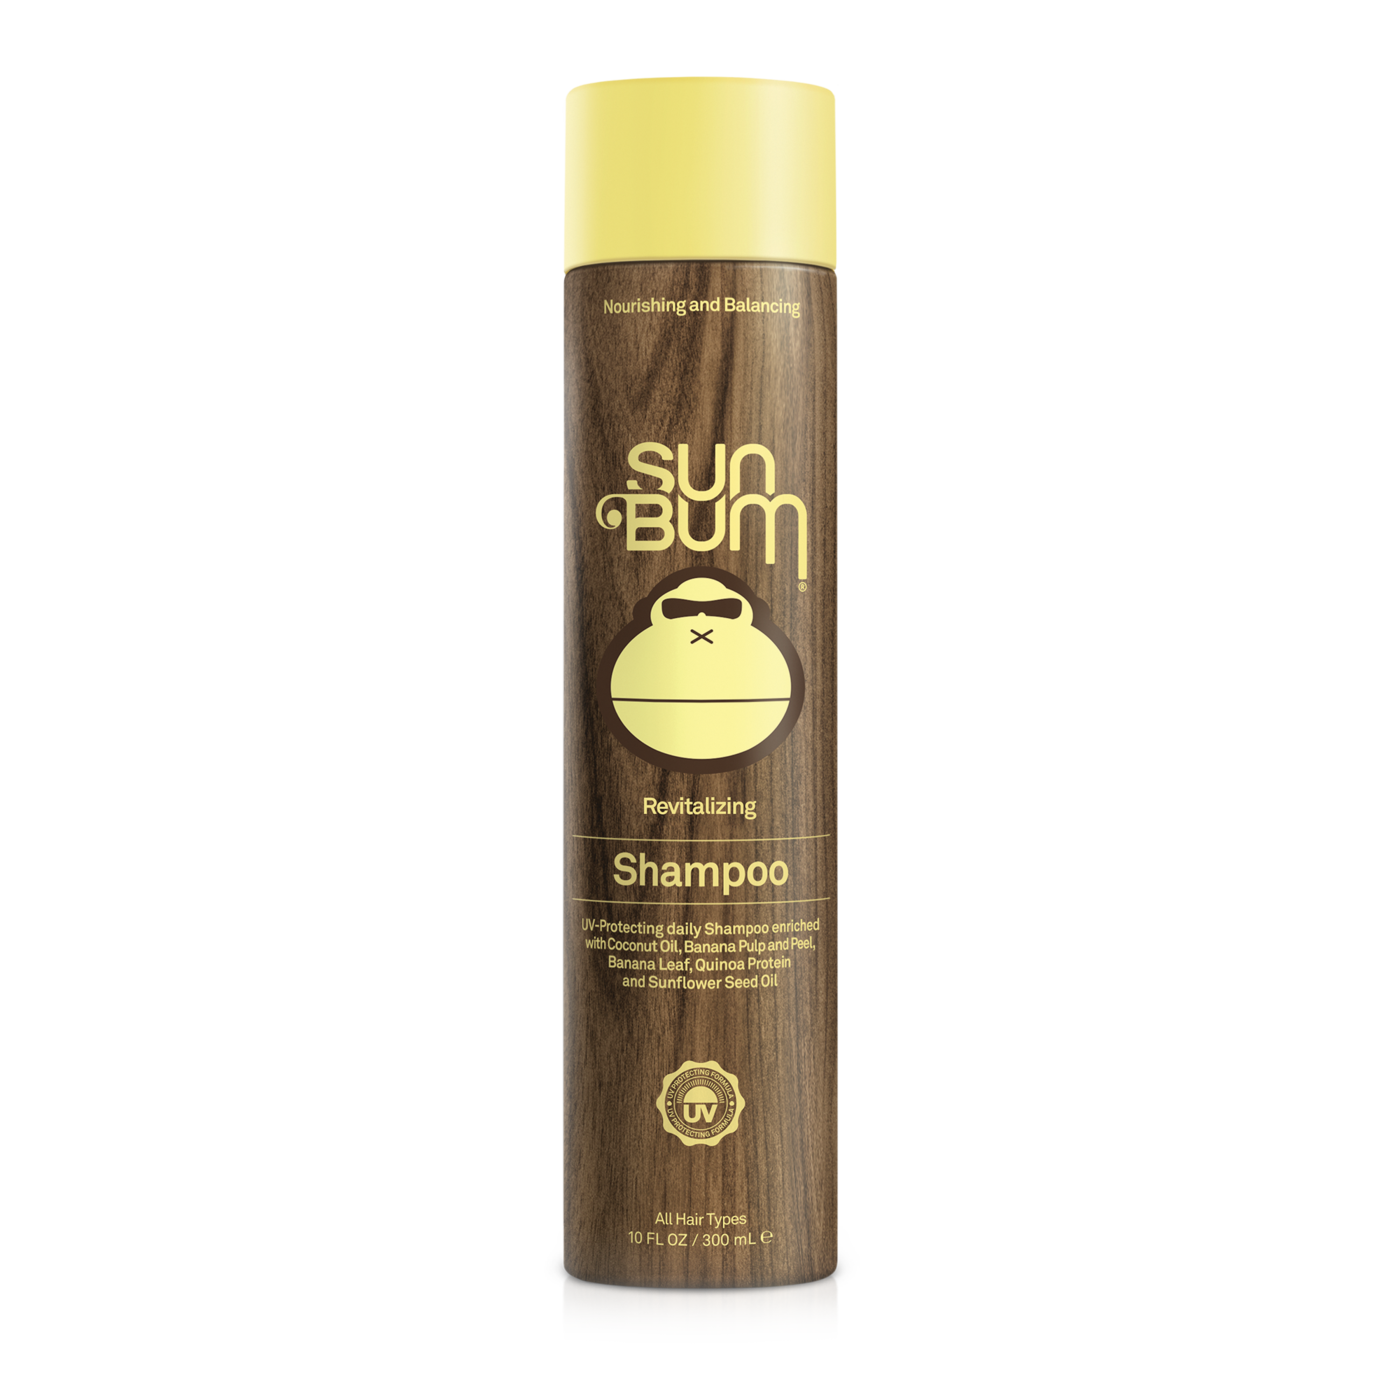 Sun Bum Shampoo